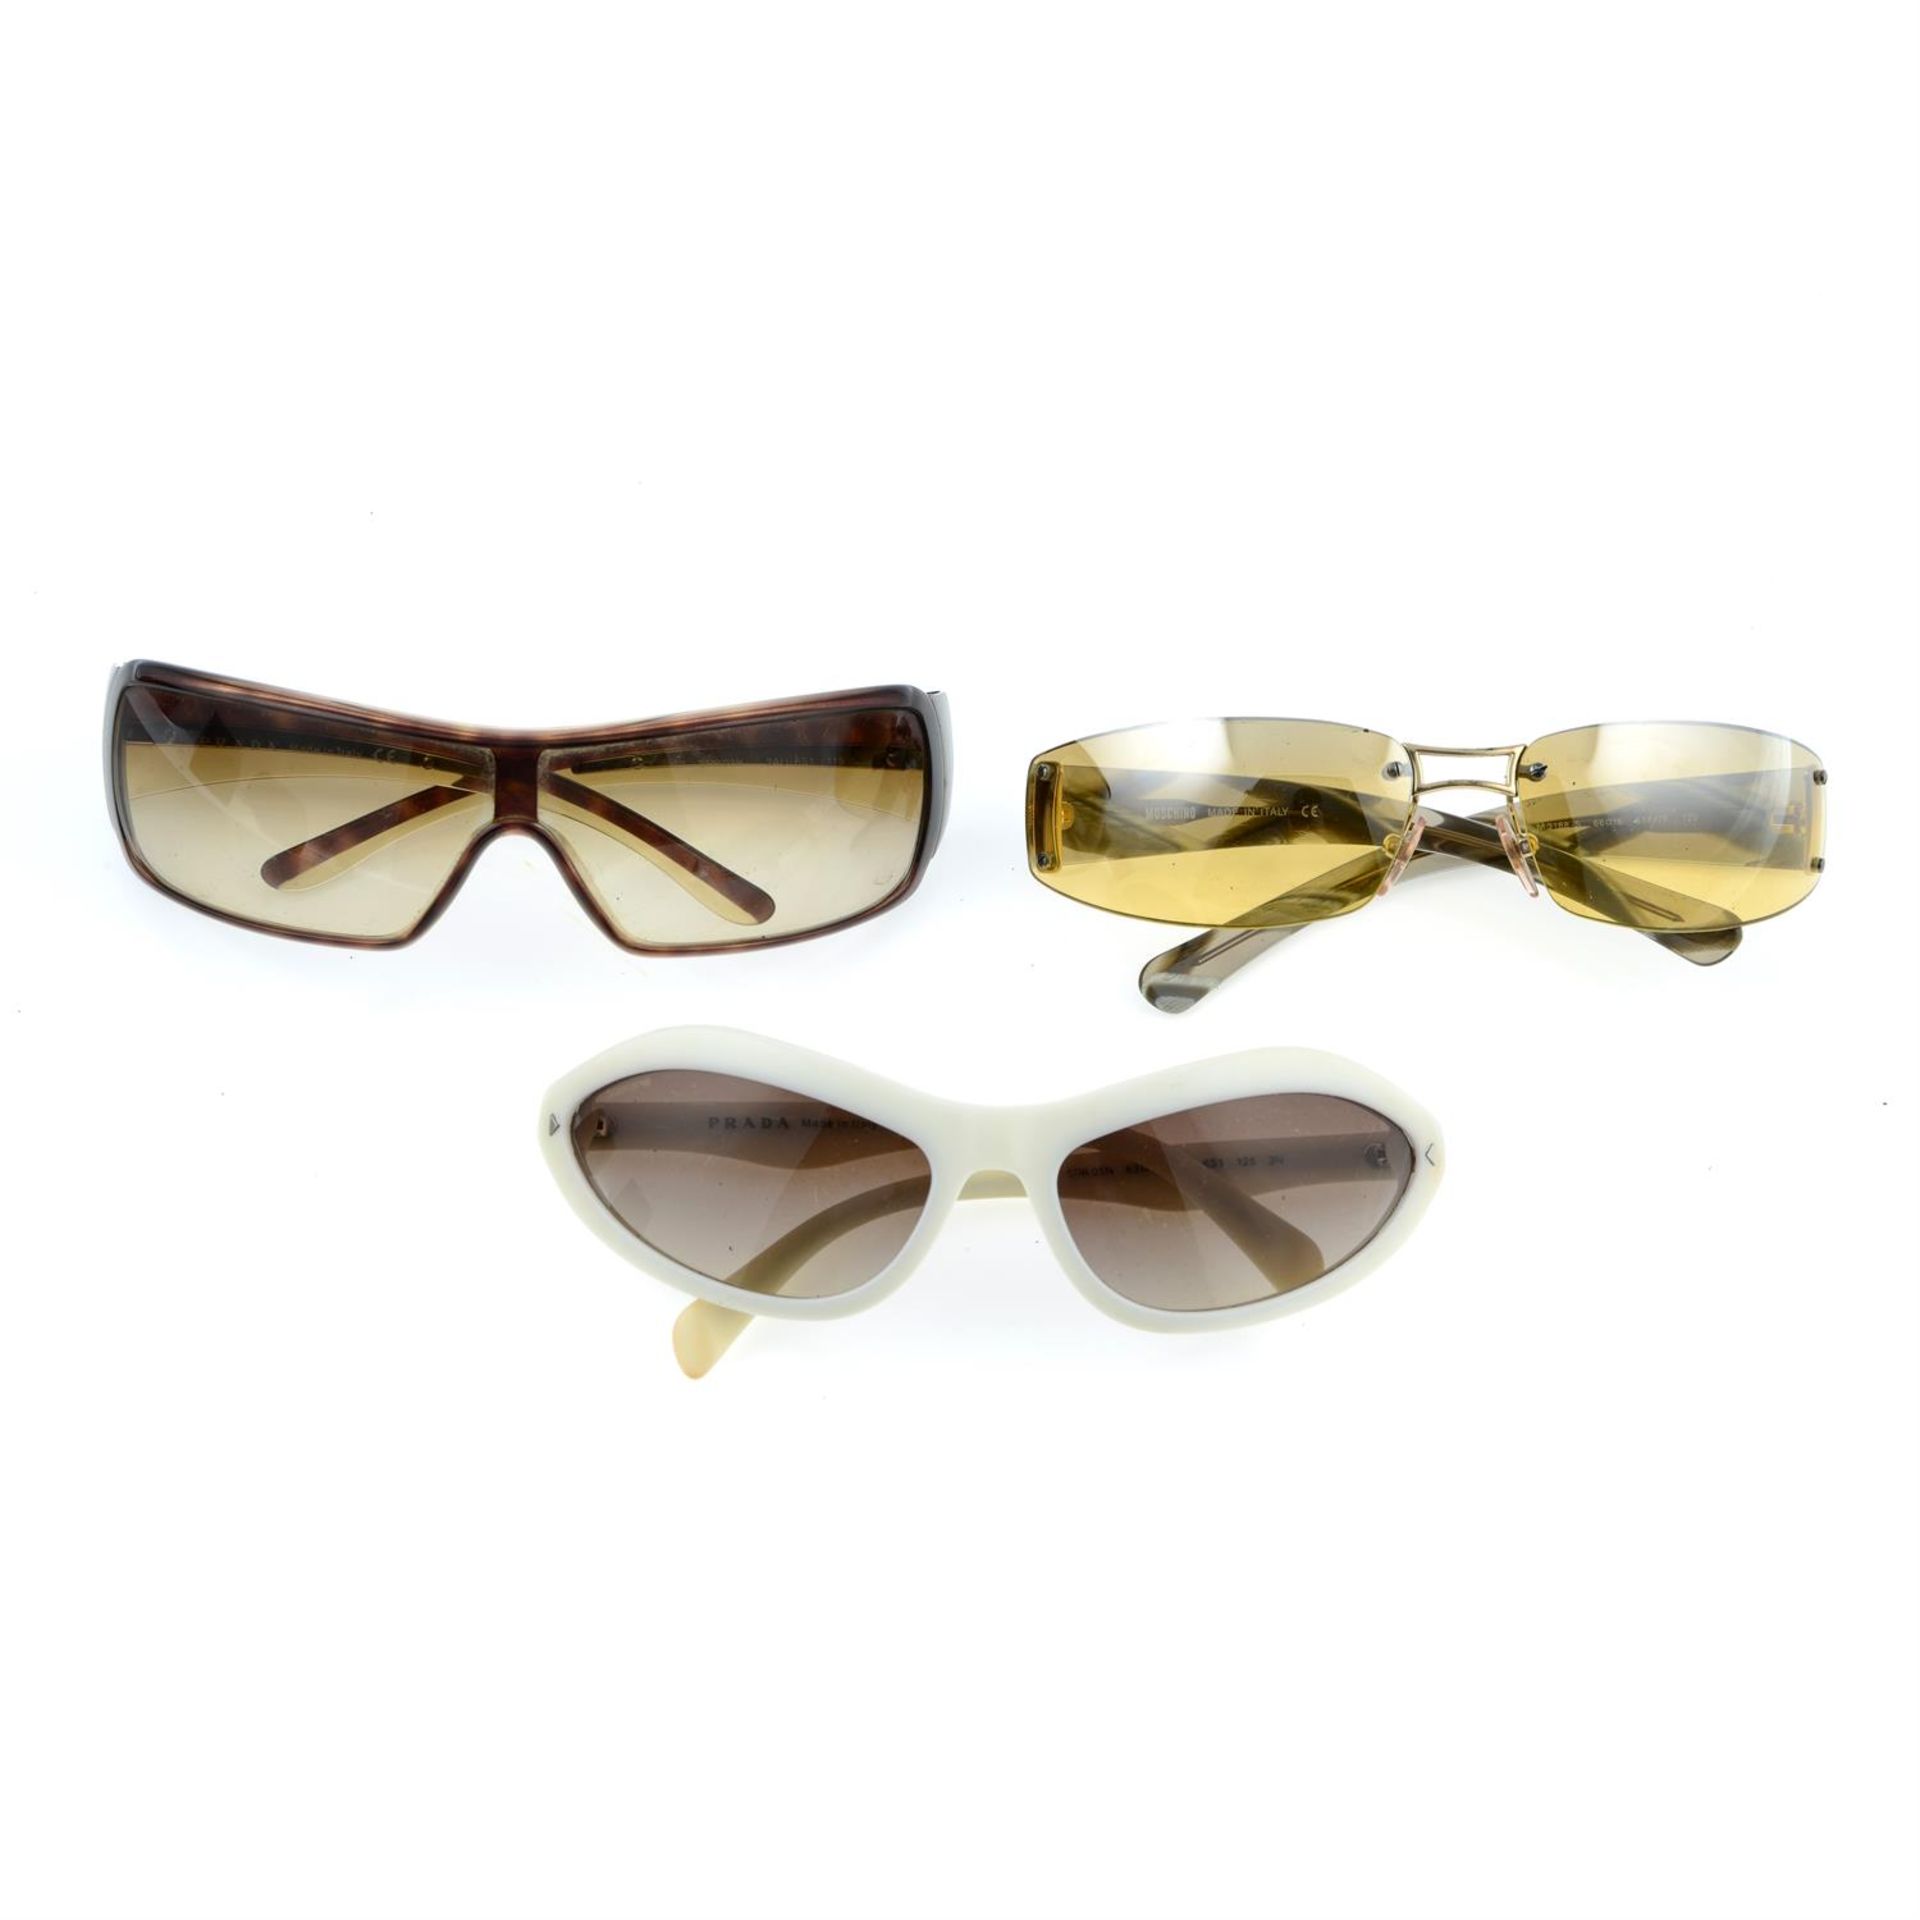 PRADA - three pairs of sunglasses.